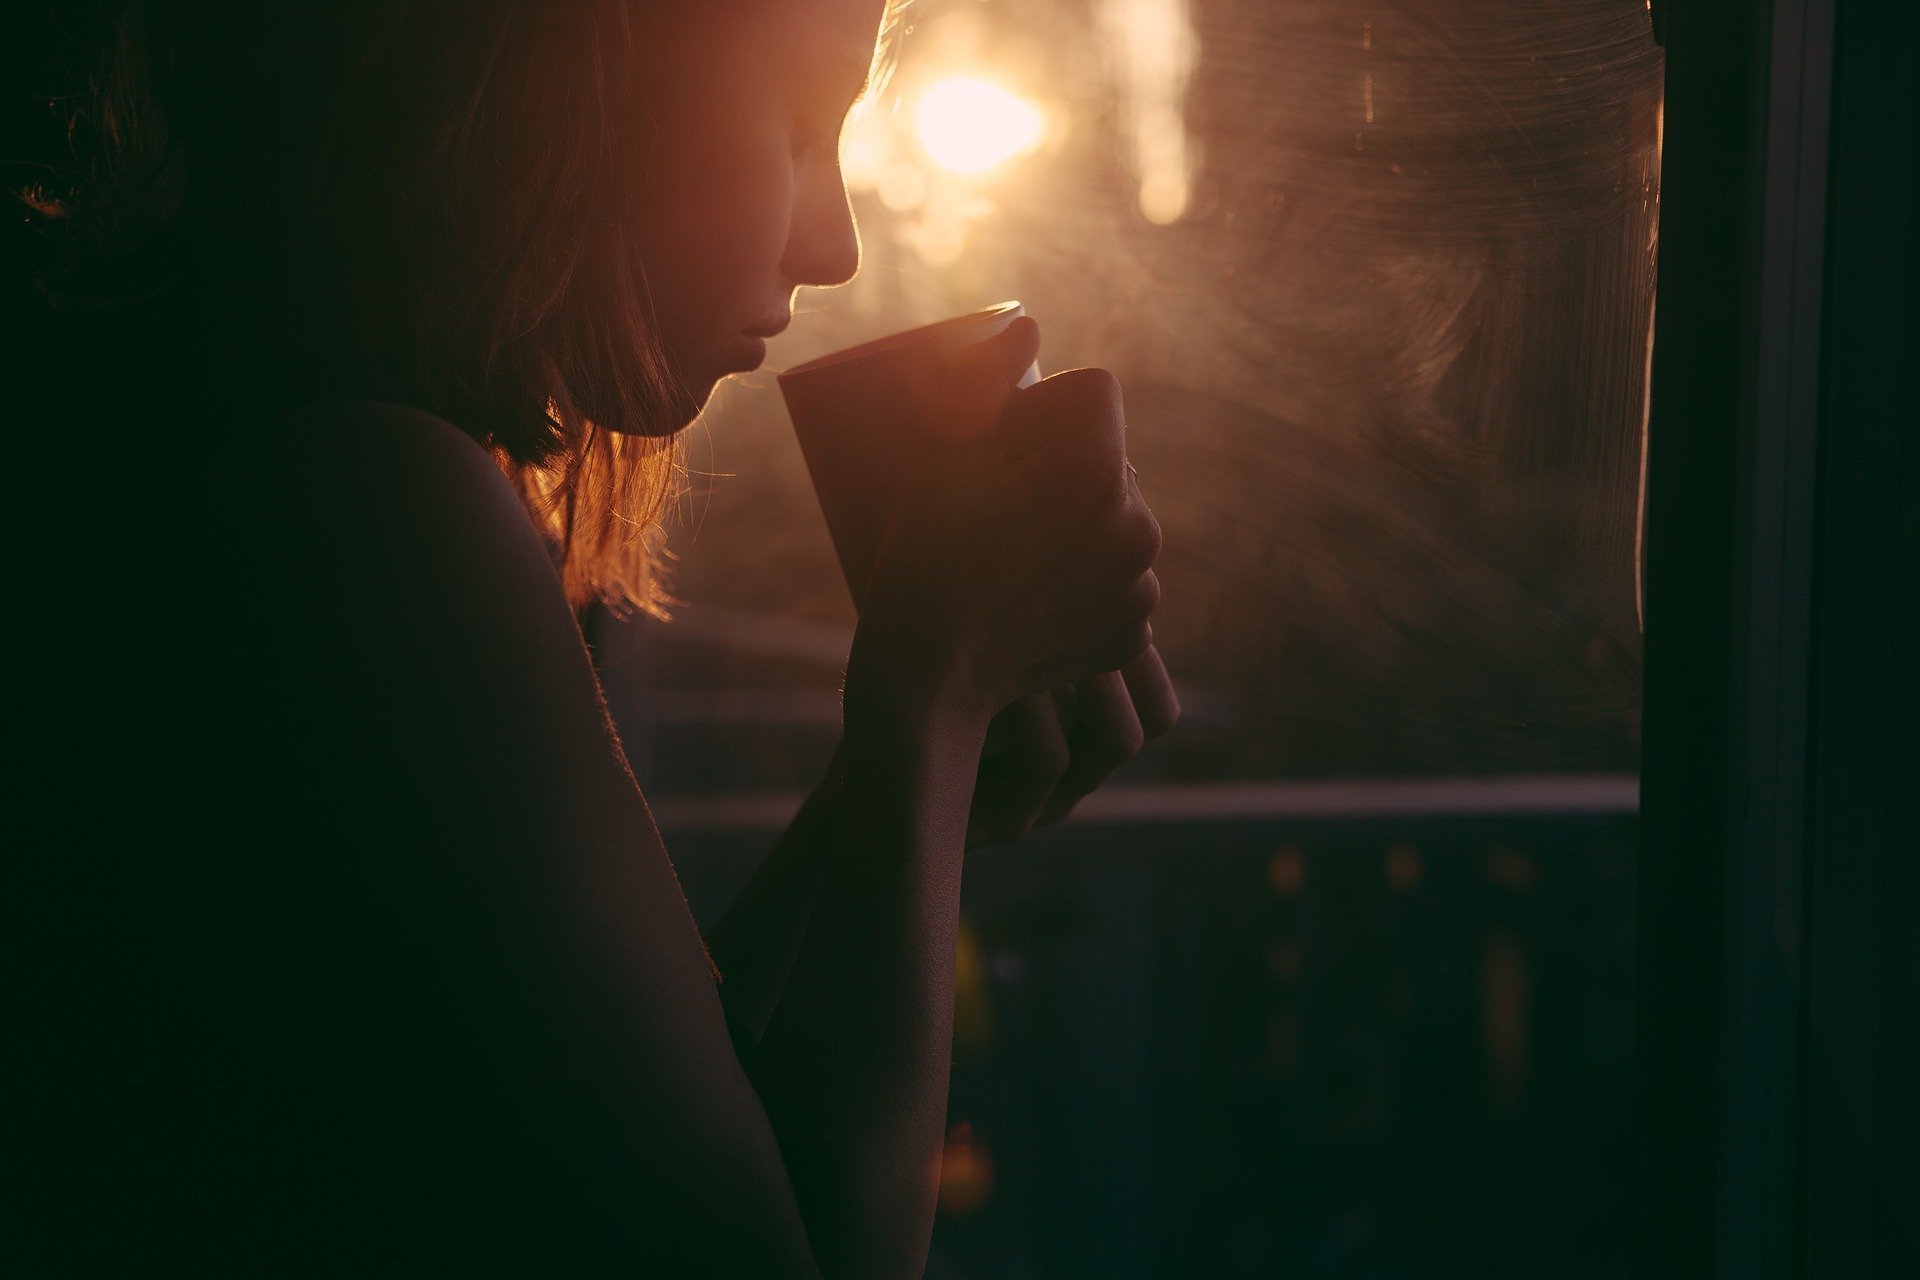 Mulher segurando xícara próximo ao rosto ao lado de uma janela